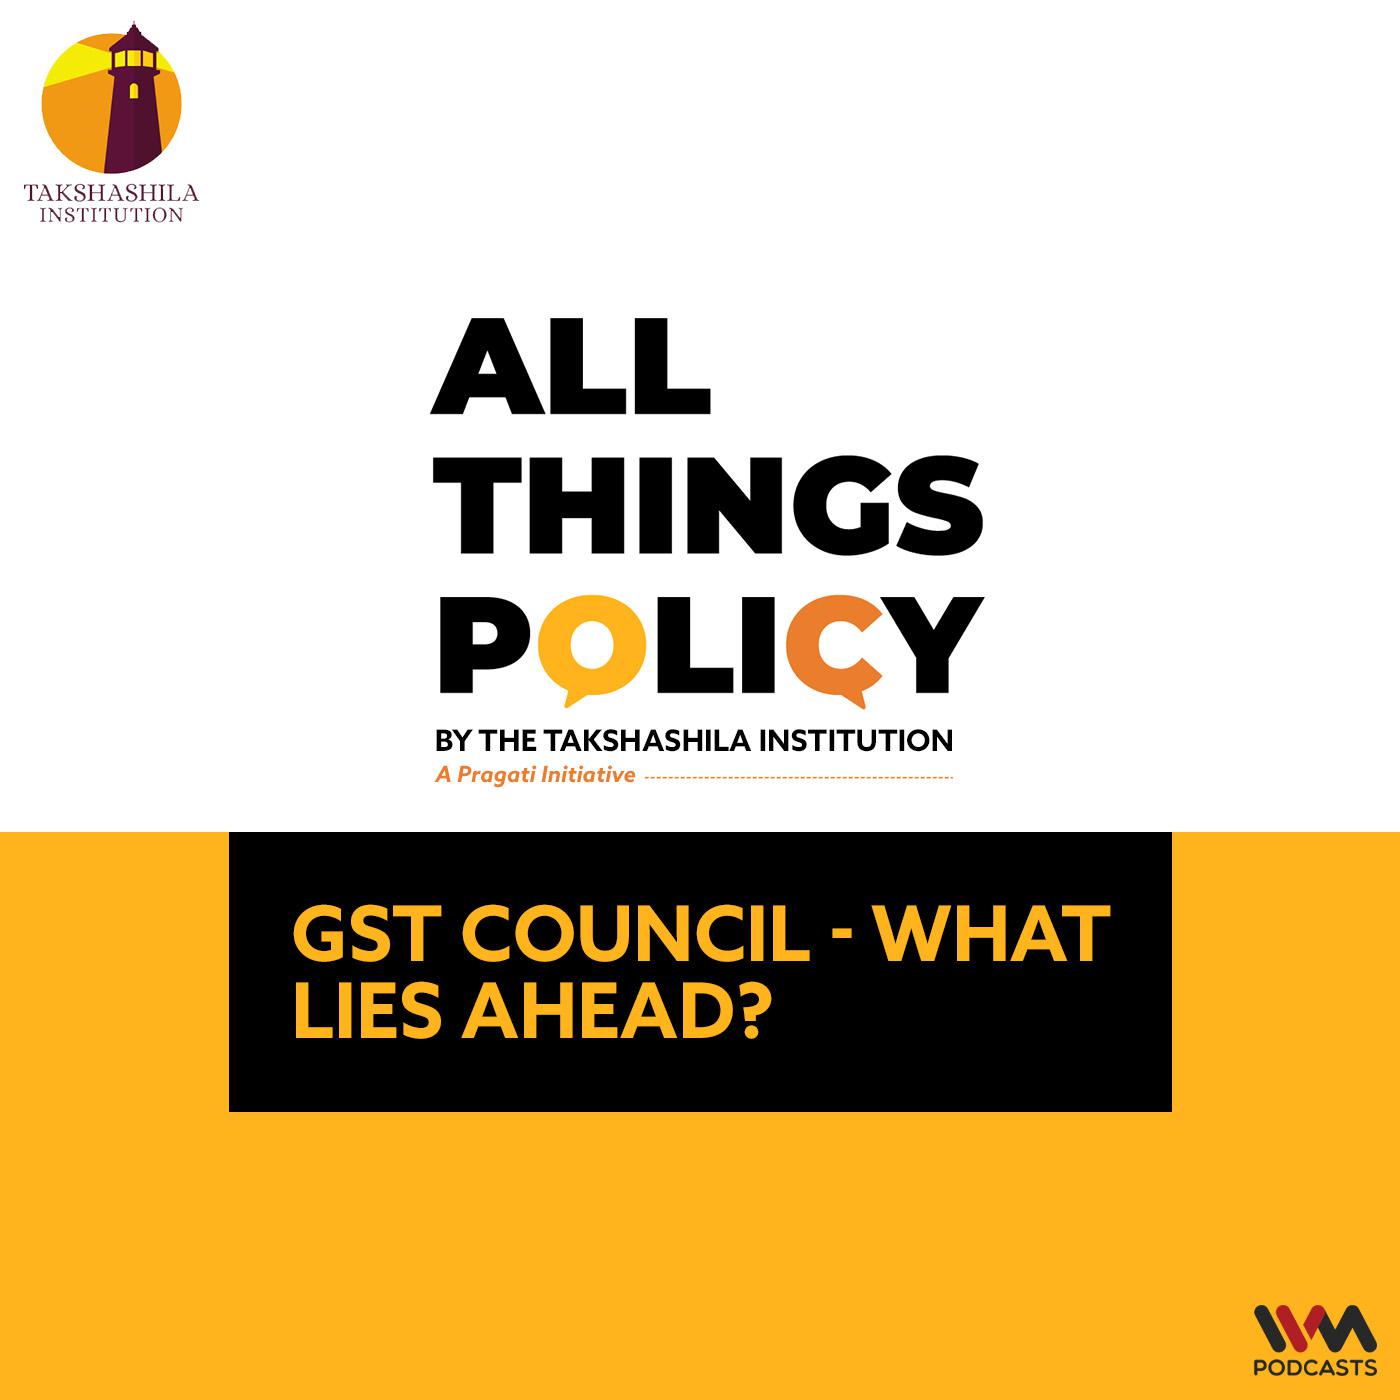 GST council - what lies ahead?